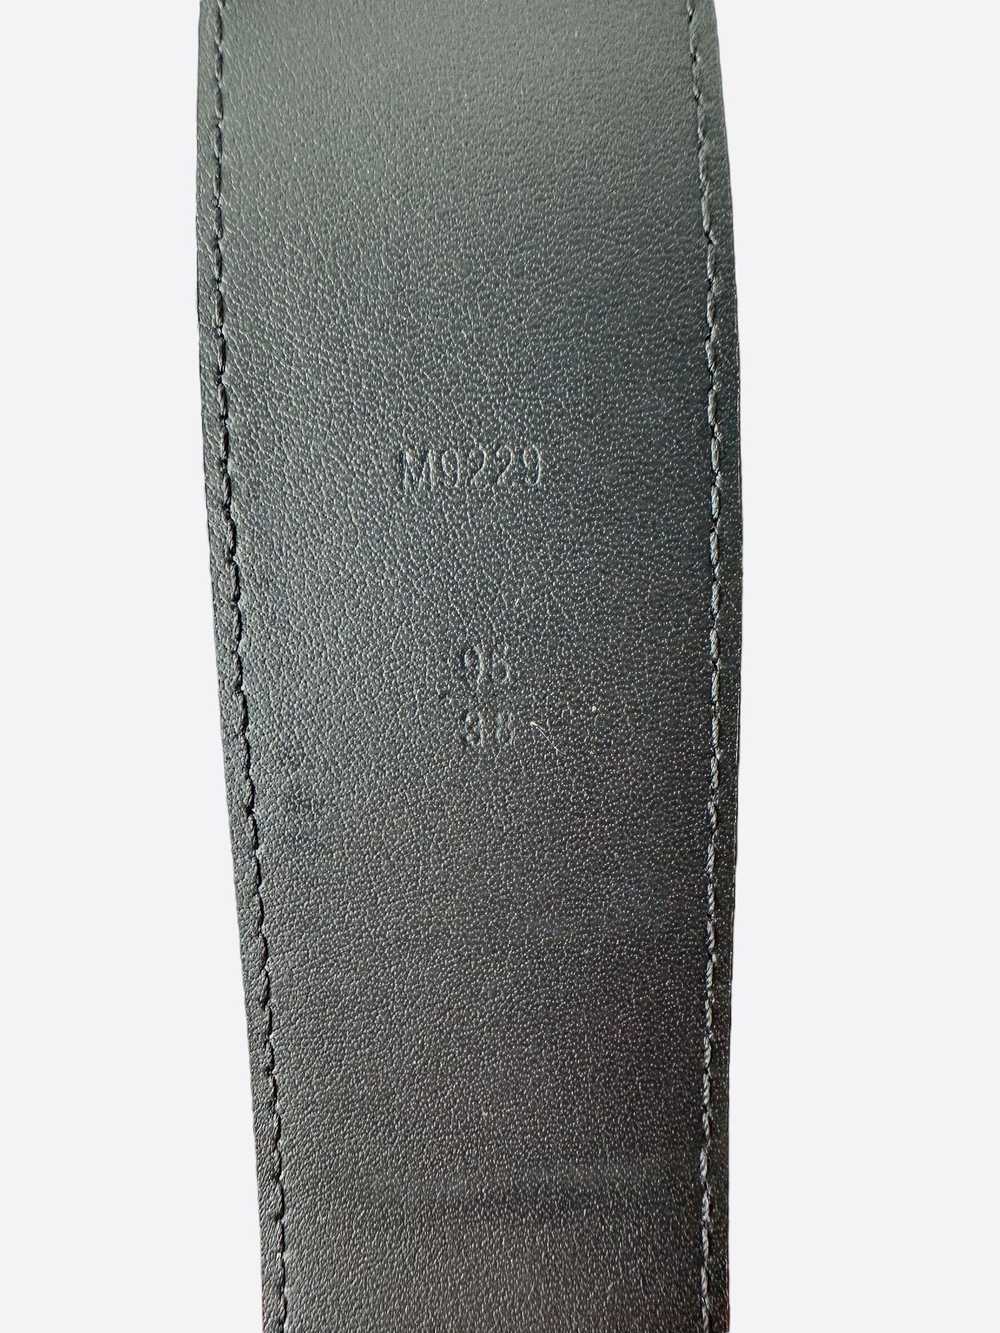 Louis Vuitton Louis Vuitton Black EPI Leather Belt - image 5